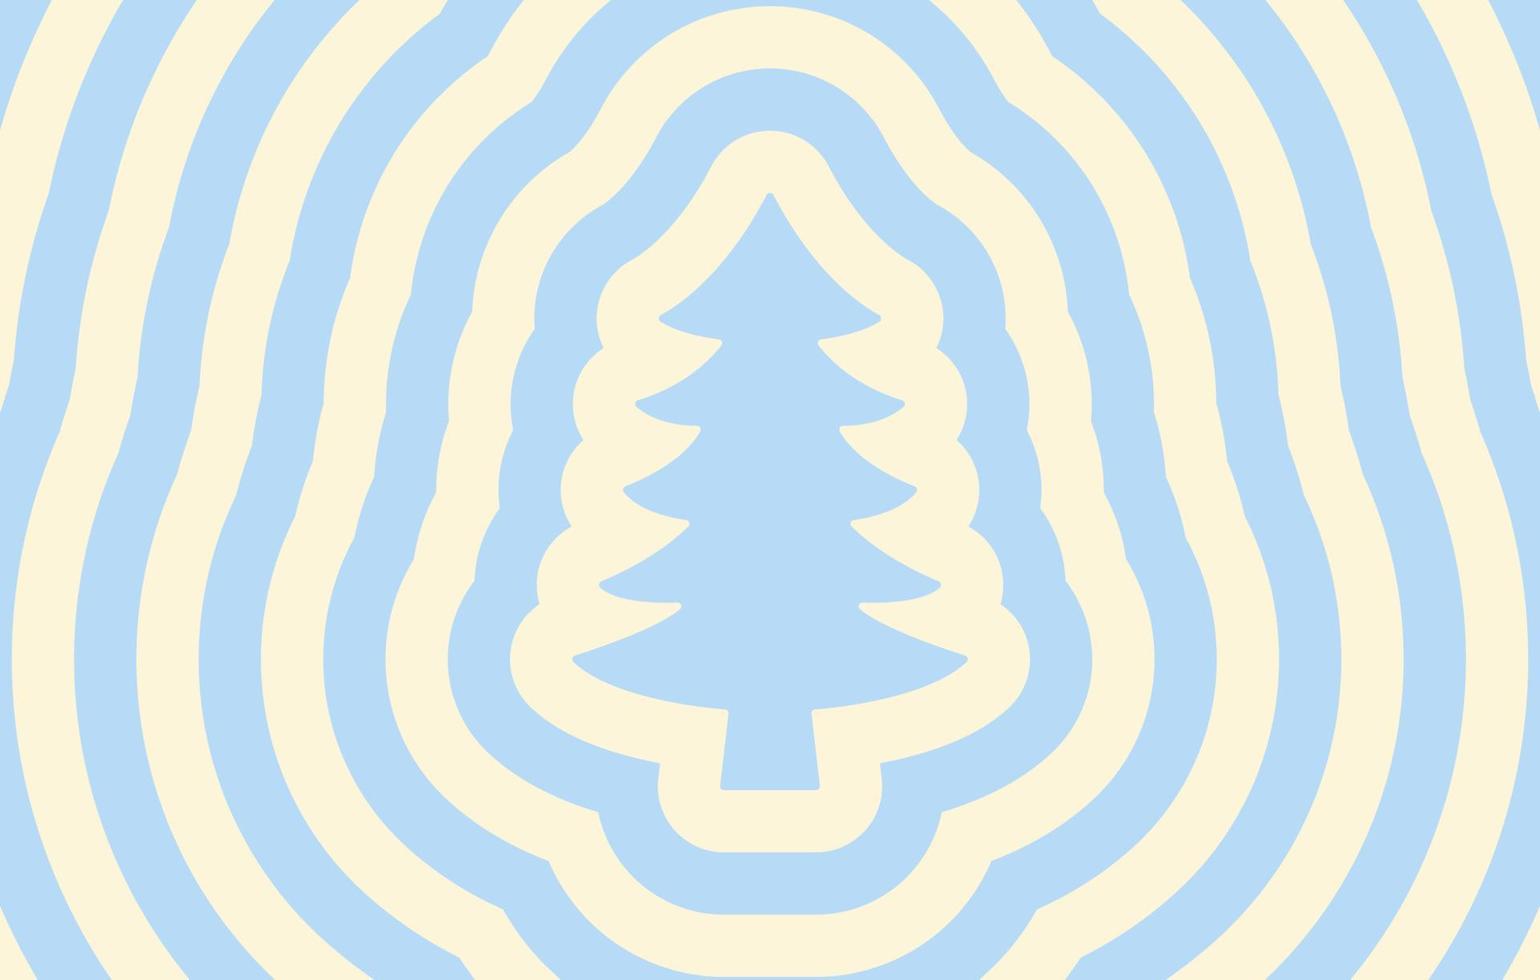 arrière-plan monochrome horizontal rétro avec arbre de Noël silhouette répétitif. imprimé hippie vectoriel tendance dans le style des années 70, 80. couleurs pastels